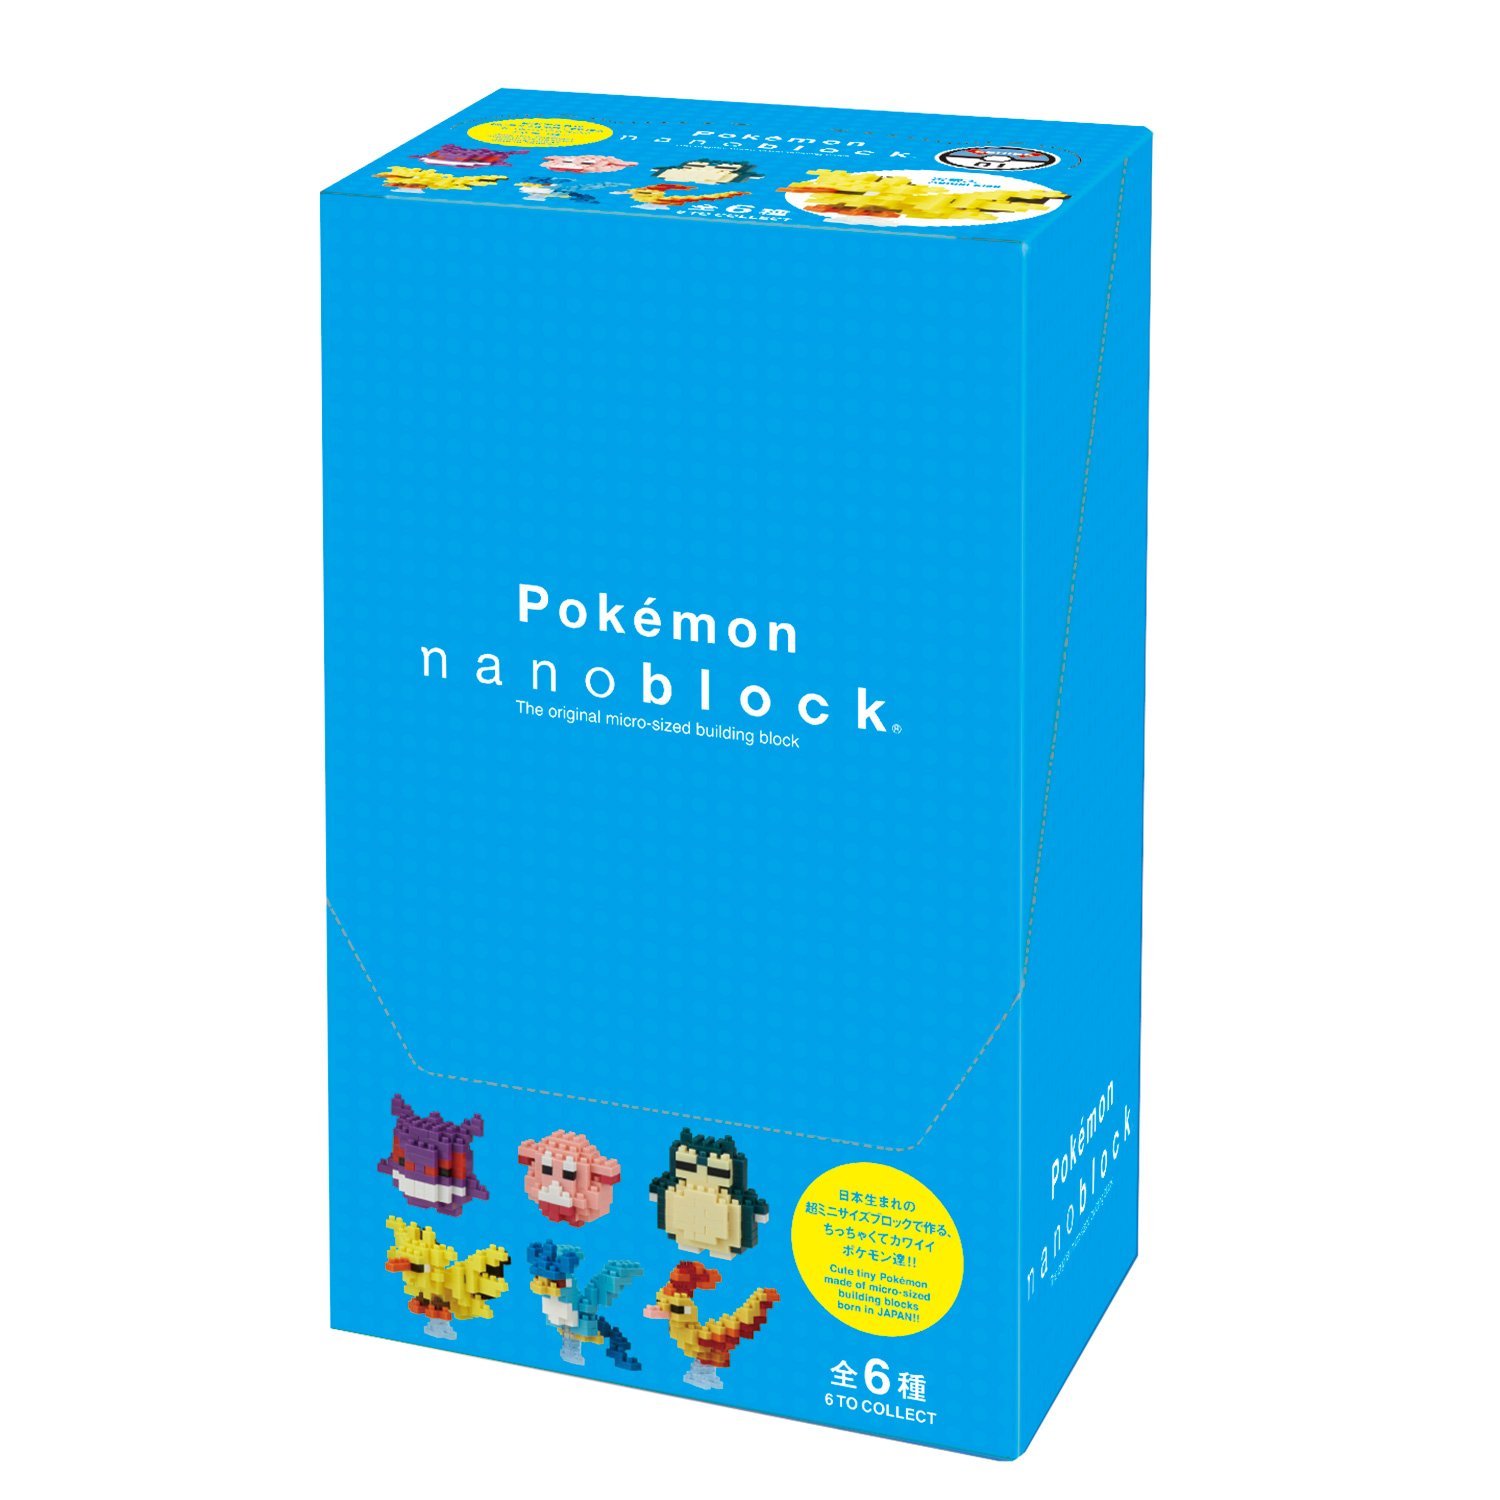 New Line of Pokemon Mega Bloks Revealed